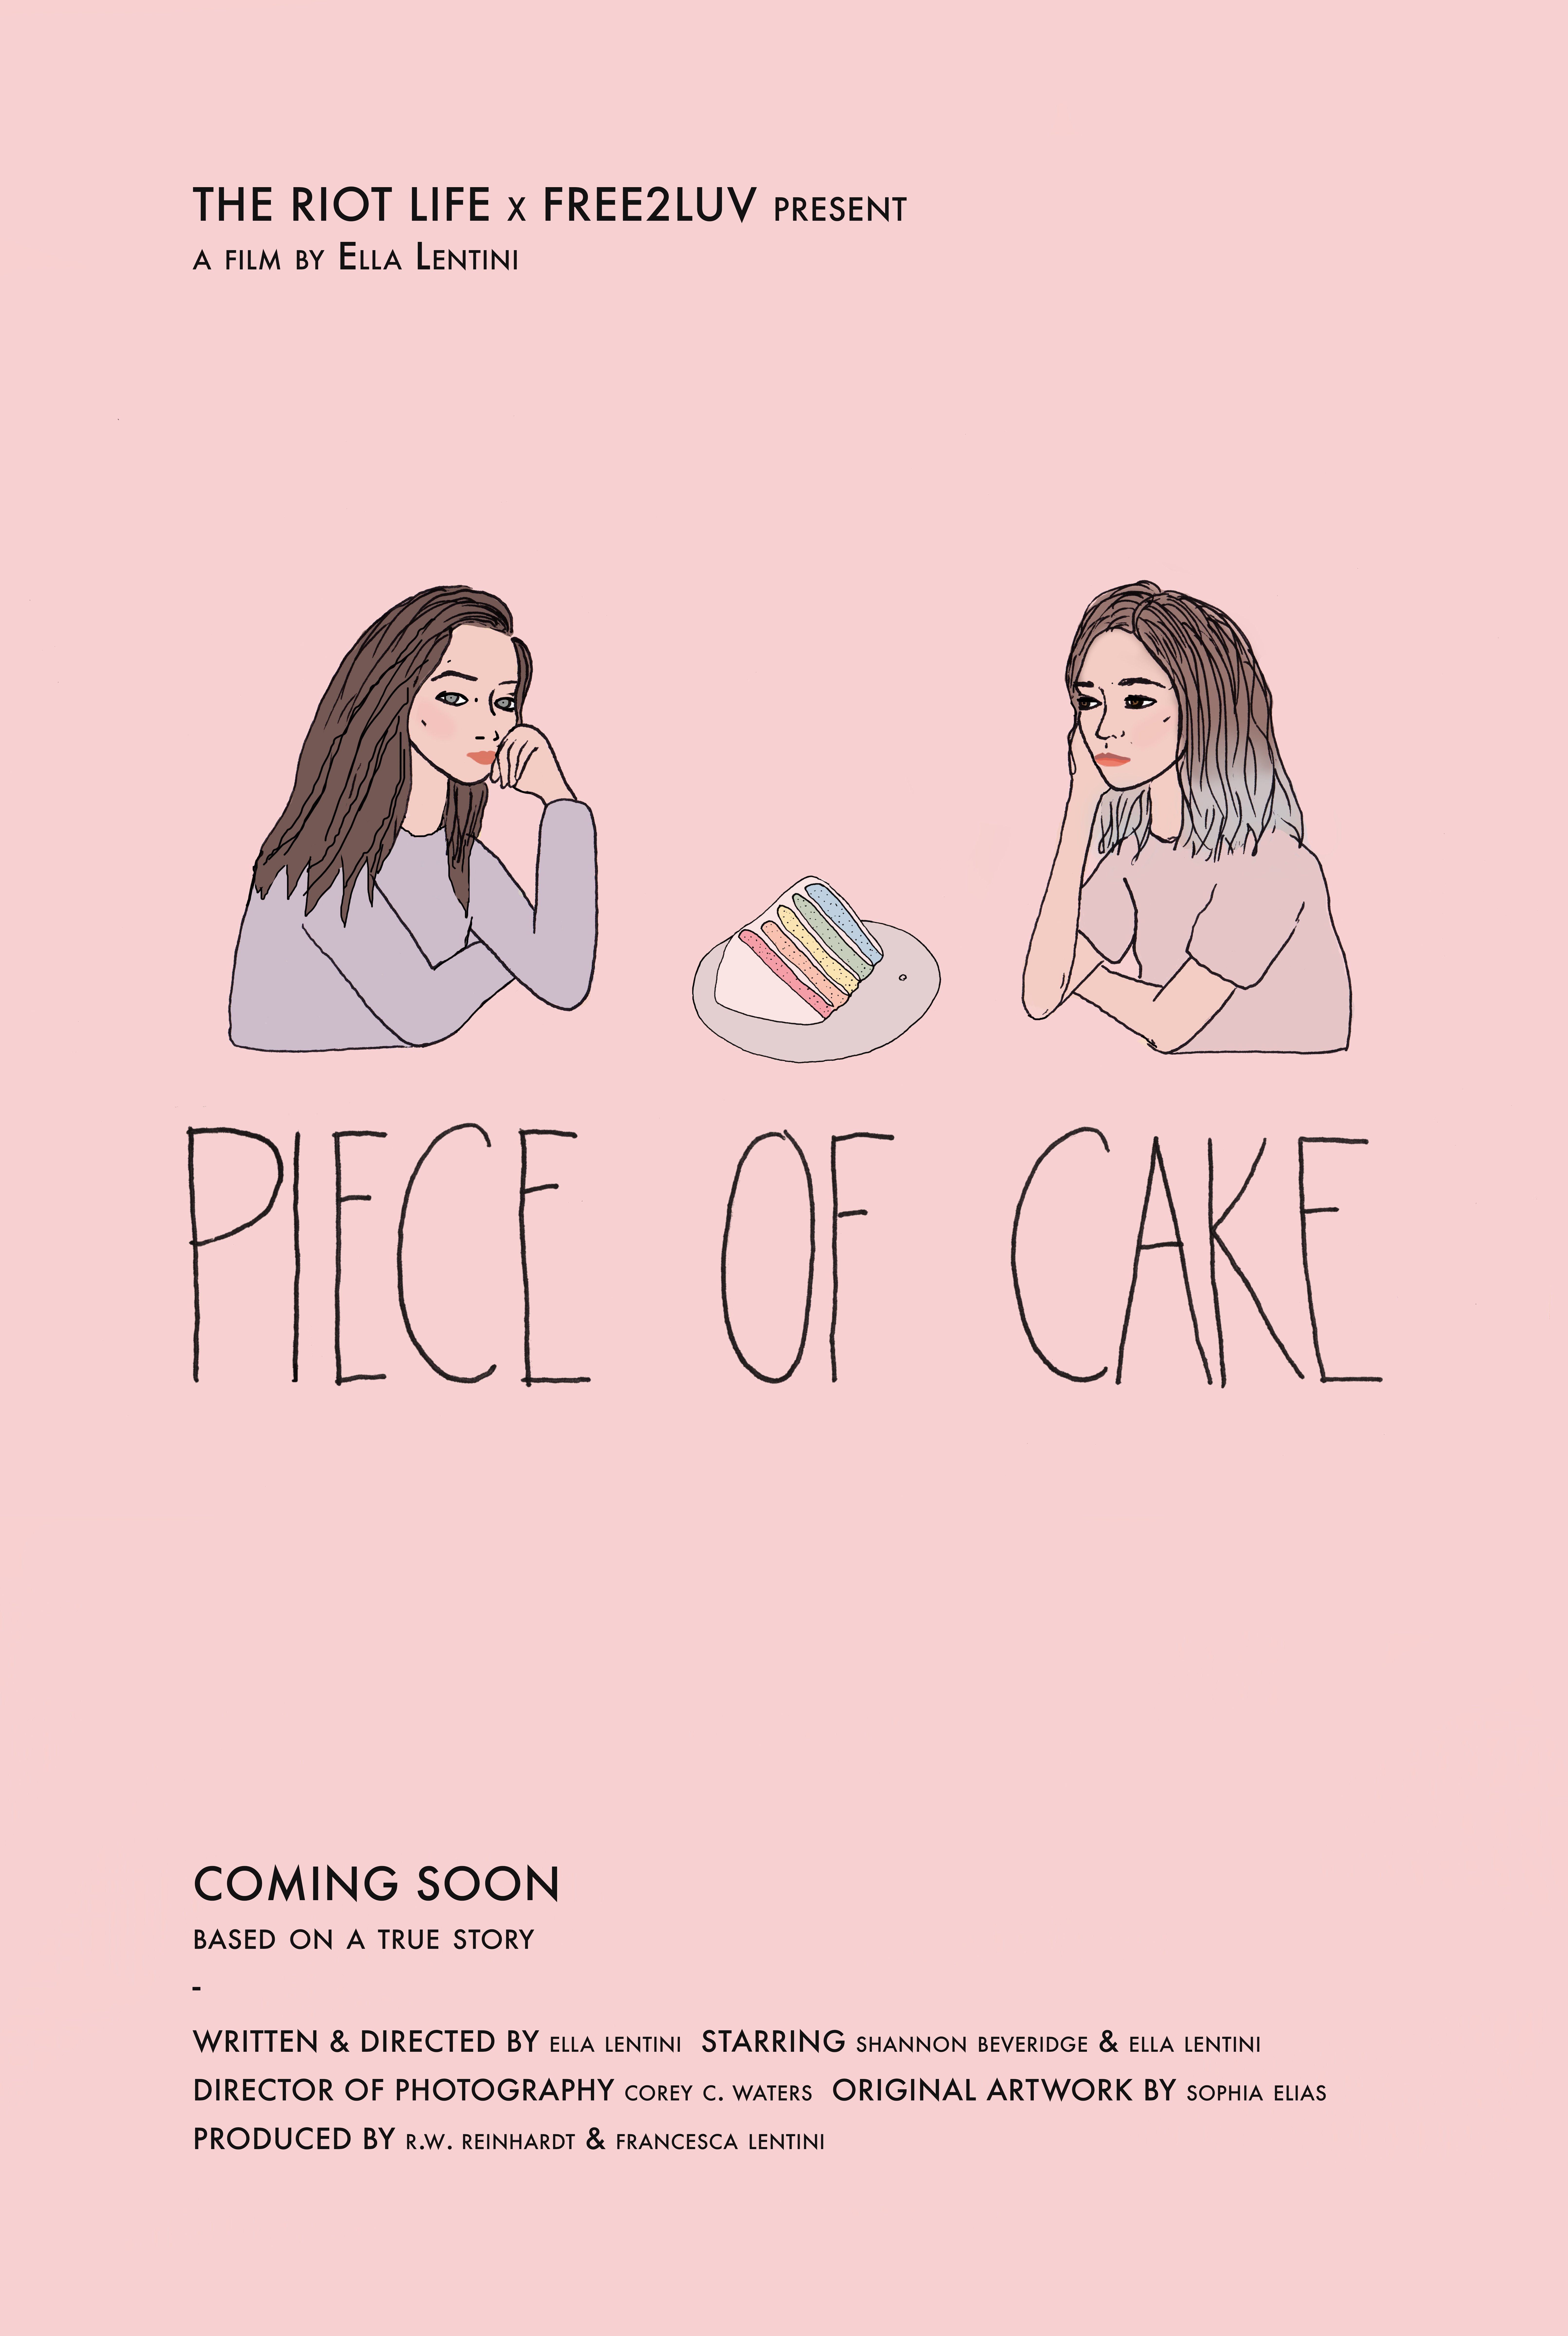 Piece of cake movie online